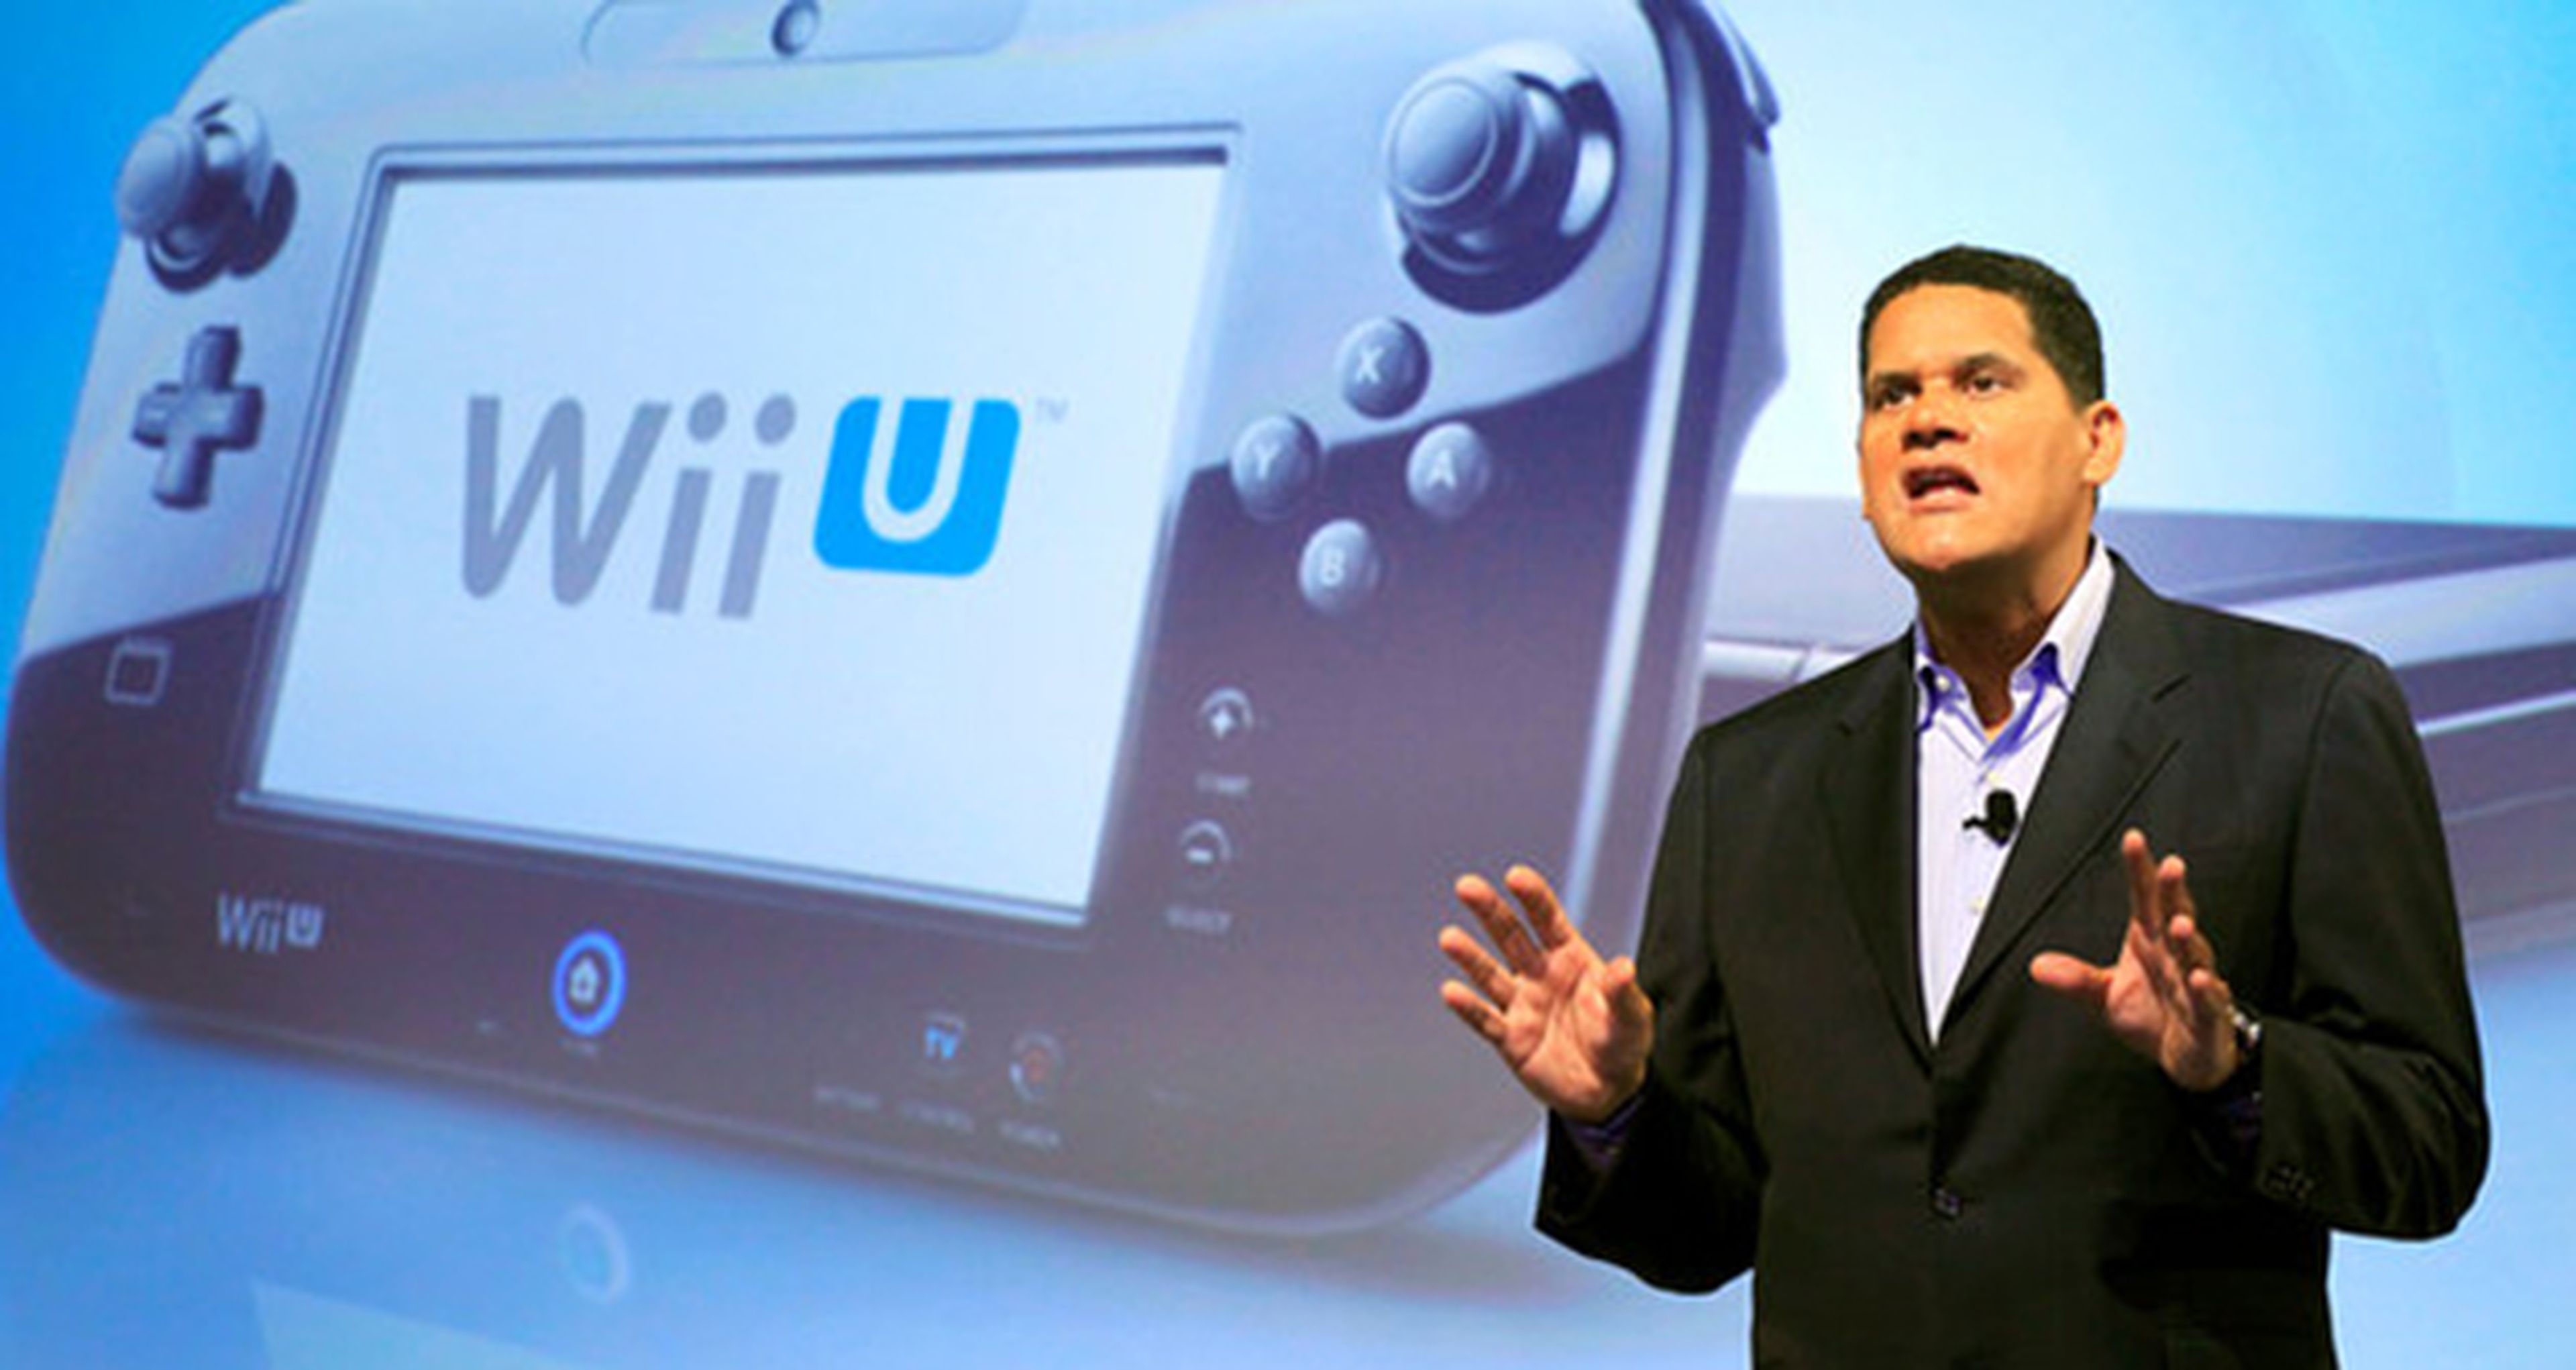 Super Smash Bros aumentaría de manera drástica las ventas de Wii U según Nintendo